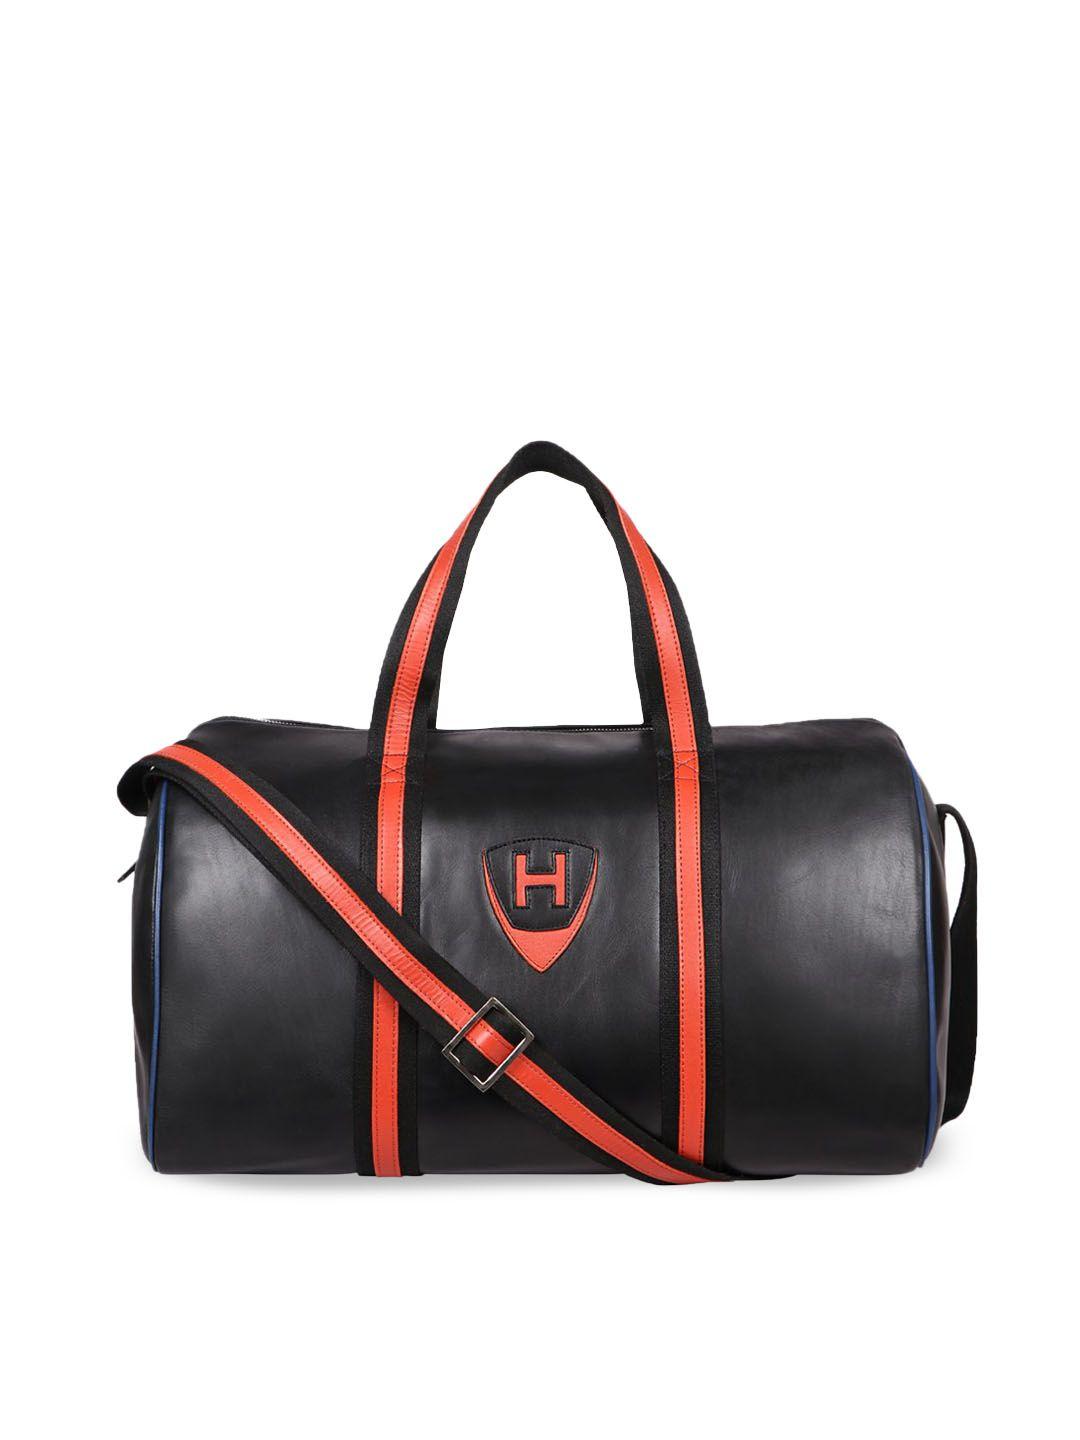 hidesign leather black duffel bag